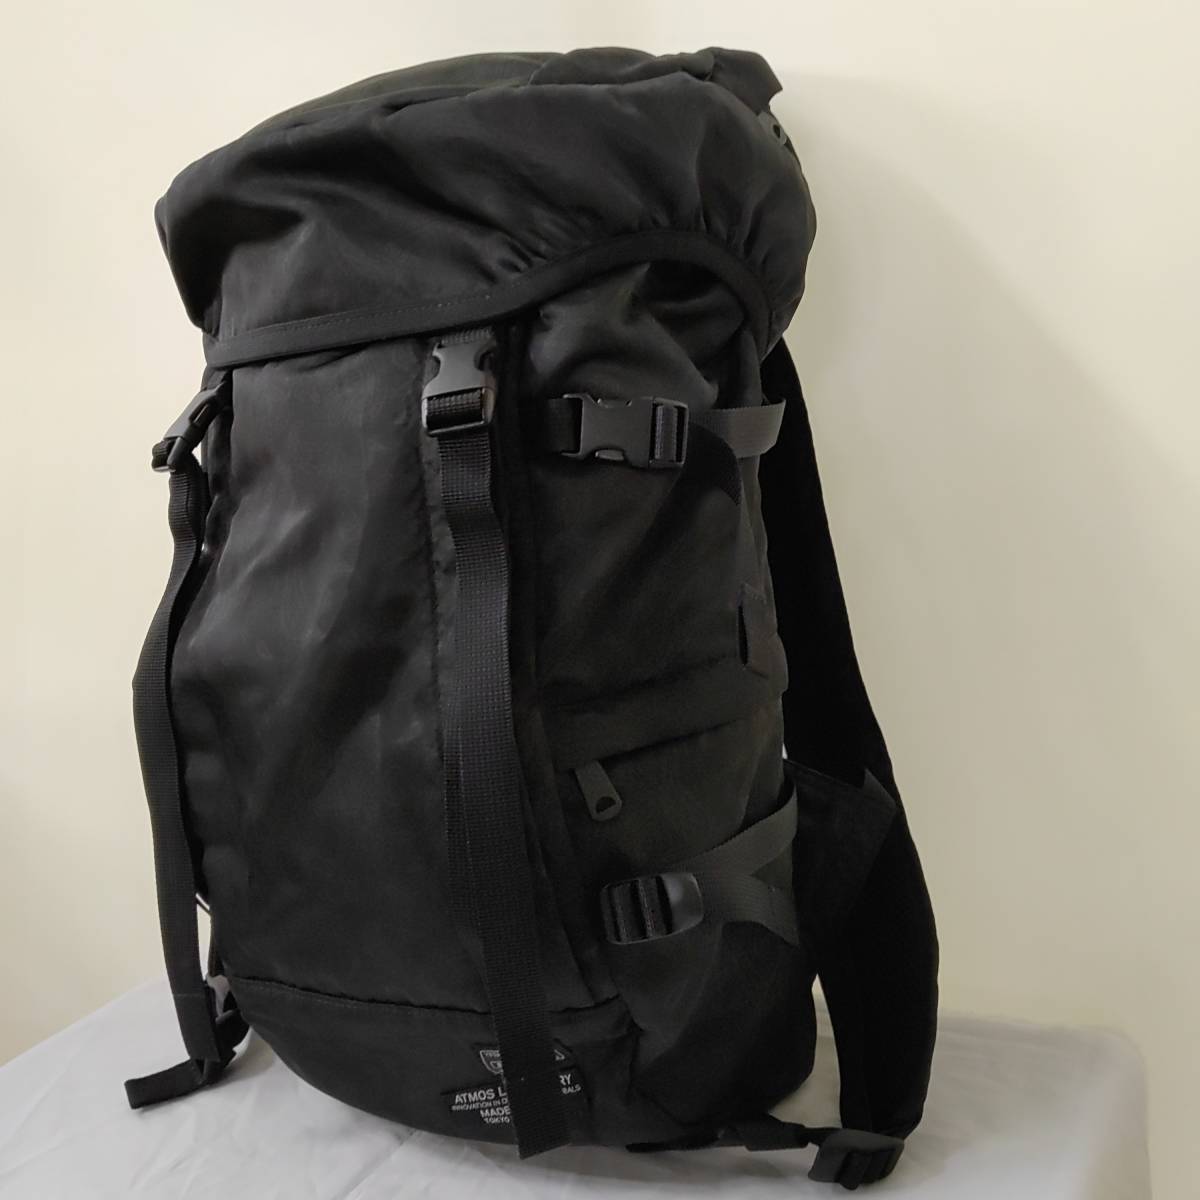 PORTER×ATMOS LAB/ Porter ×a Tomos labo/peiz Lee pattern backpack / rucksack 